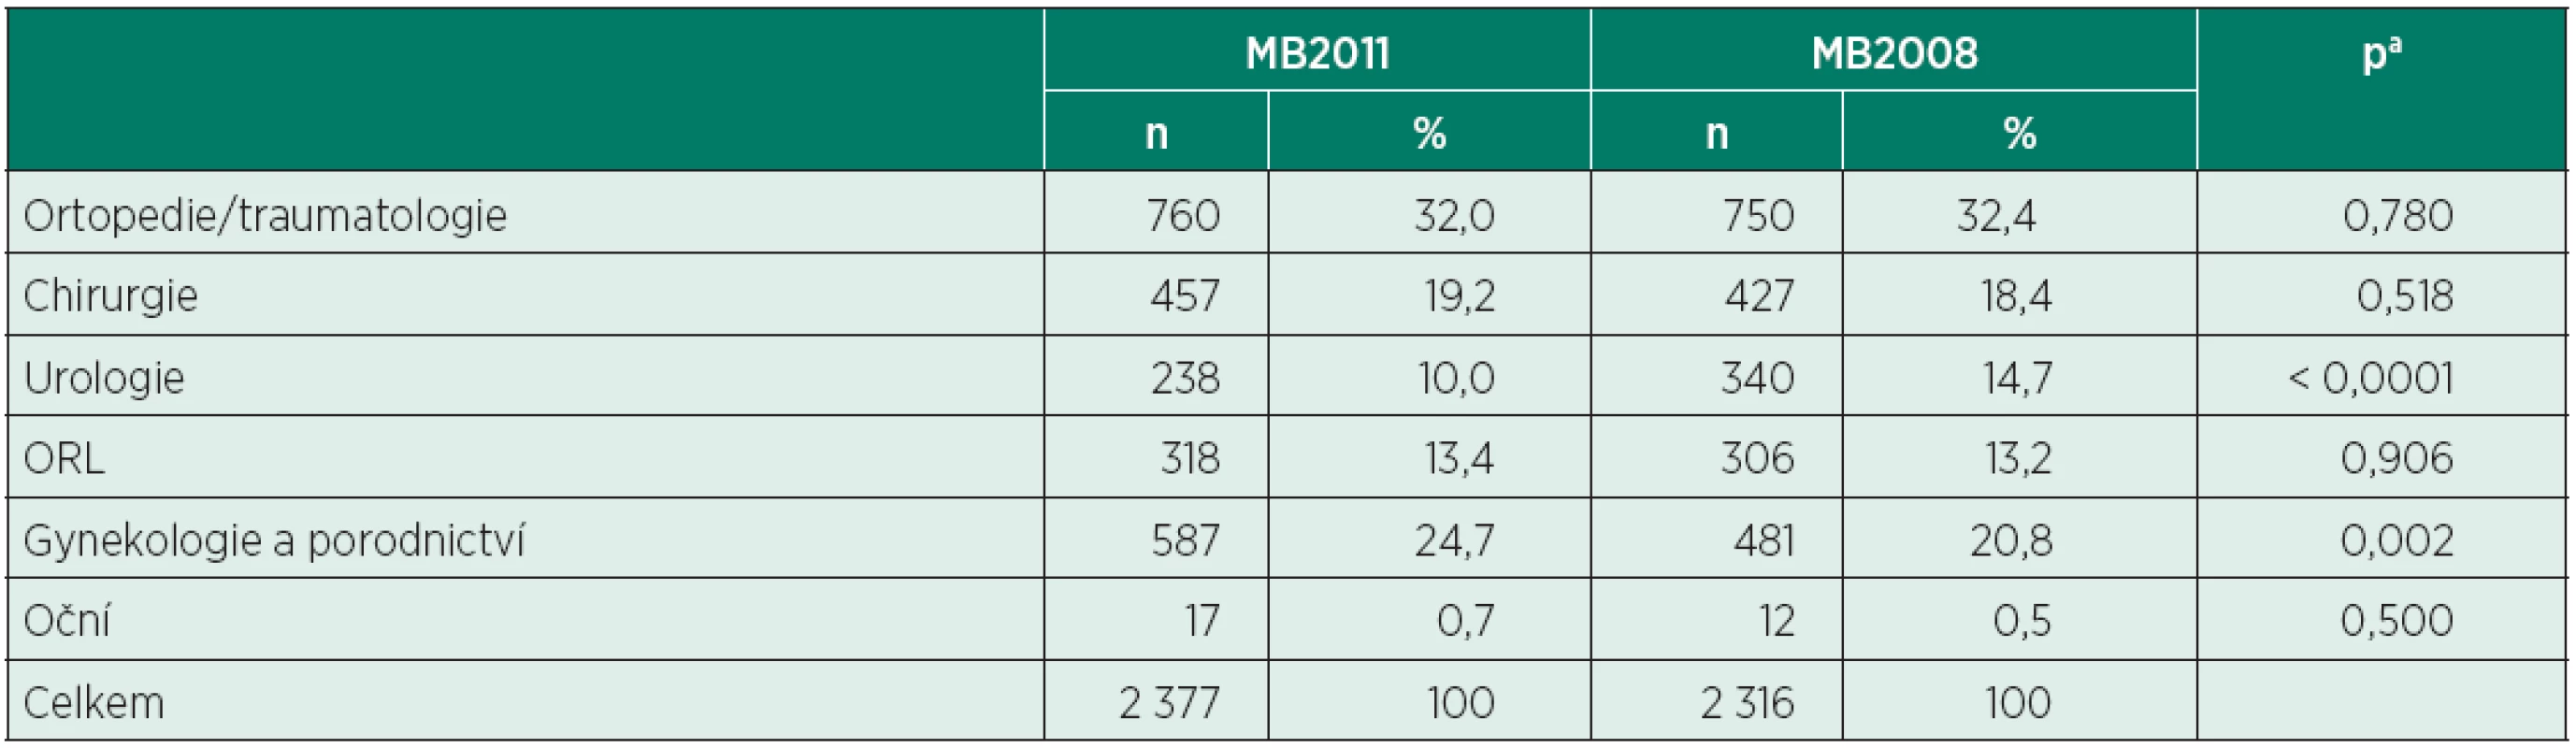 Počty anestezií ve vybraných oborech (MB2011 vs. MB2008)